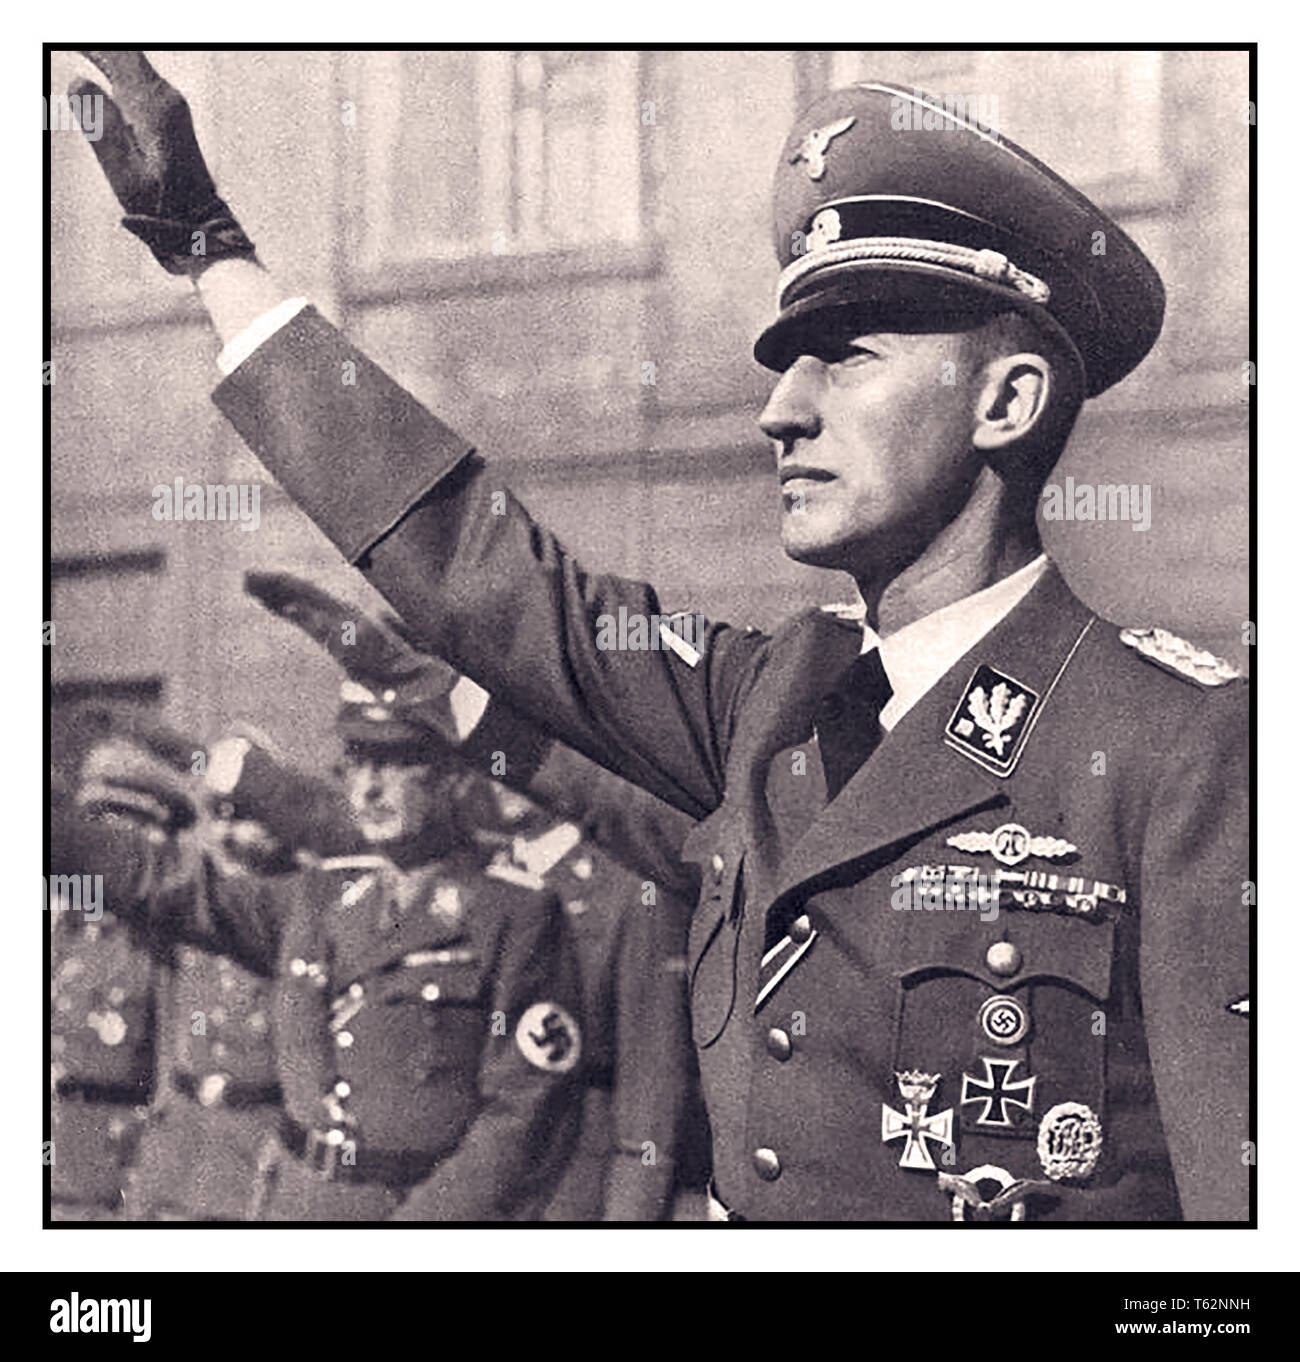 REINHARD HEYDRICH WW2 1940 Schutzstaffel (SS-Obergruppenführer) et le général der Polizei Reinhard Heydrich, chef du Reichssicherheitshauptamt (principal, Bureau de sécurité du Reich), le RSHA services de sécurité combinée de l'Allemagne nazie, et statuant Reichsprotektor du Protectorat de Bohême-Moravie Reinhard Heydrich était l'un des hommes les plus puissants de l'Allemagne nazie et une figure importante dans la montée d'Adolf Hitler ; il a été donné la charge globale de la "Solution Finale (Holocauste) à la question juive" en Europe Il a été détesté par beaucoup, à juste titre, et a été assassiné par des soldats de l'exil tchèque très brave. Banque D'Images